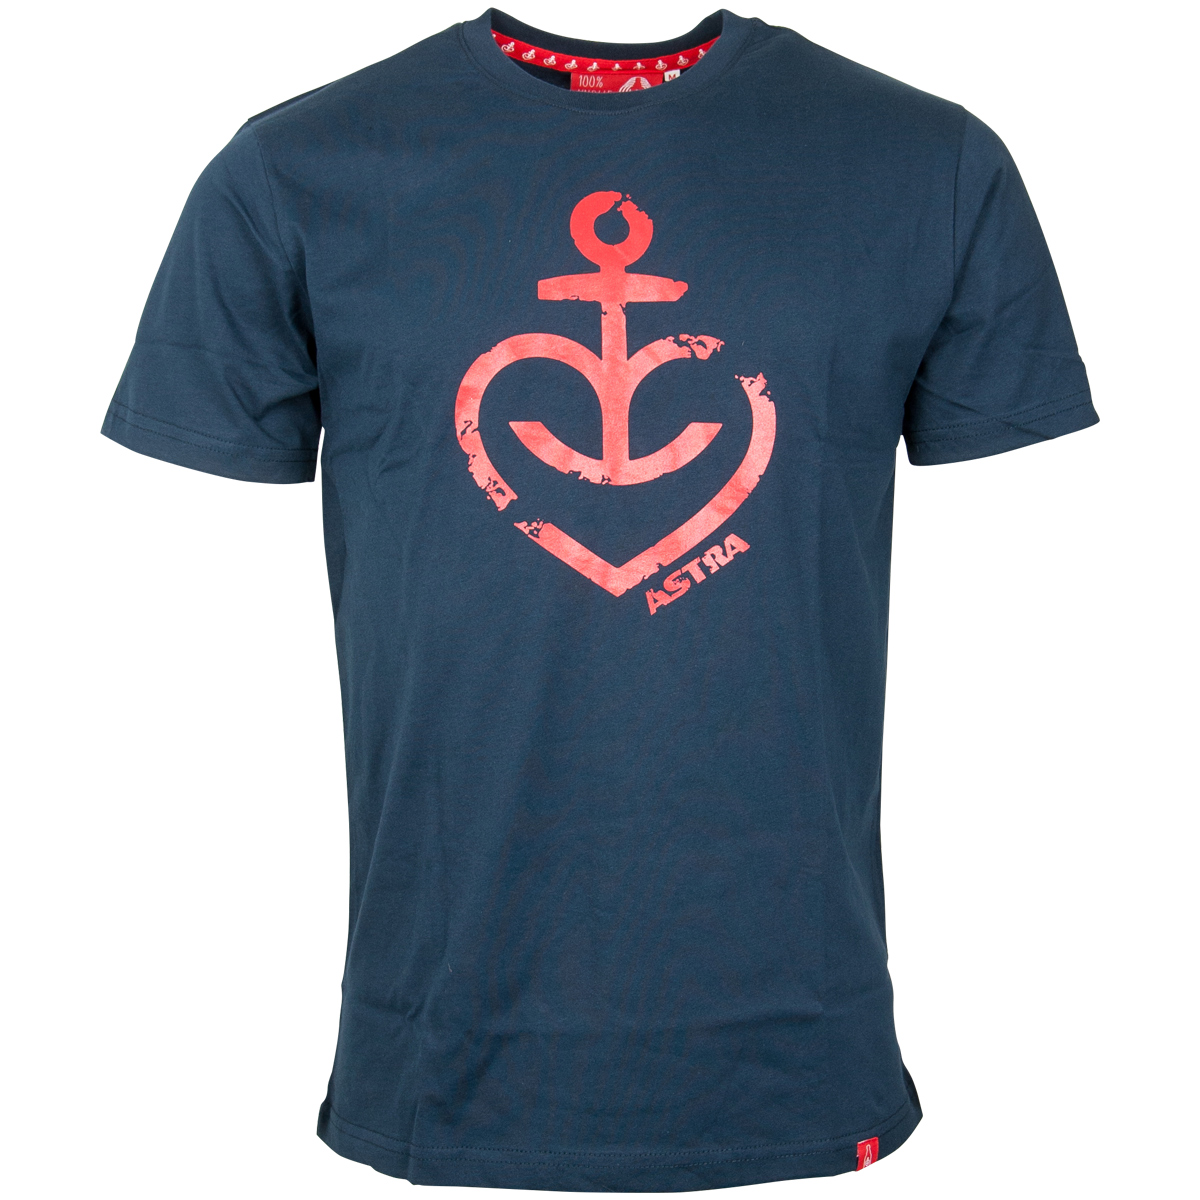 Astra - T-Shirt Herzanker Rot - Navy blau